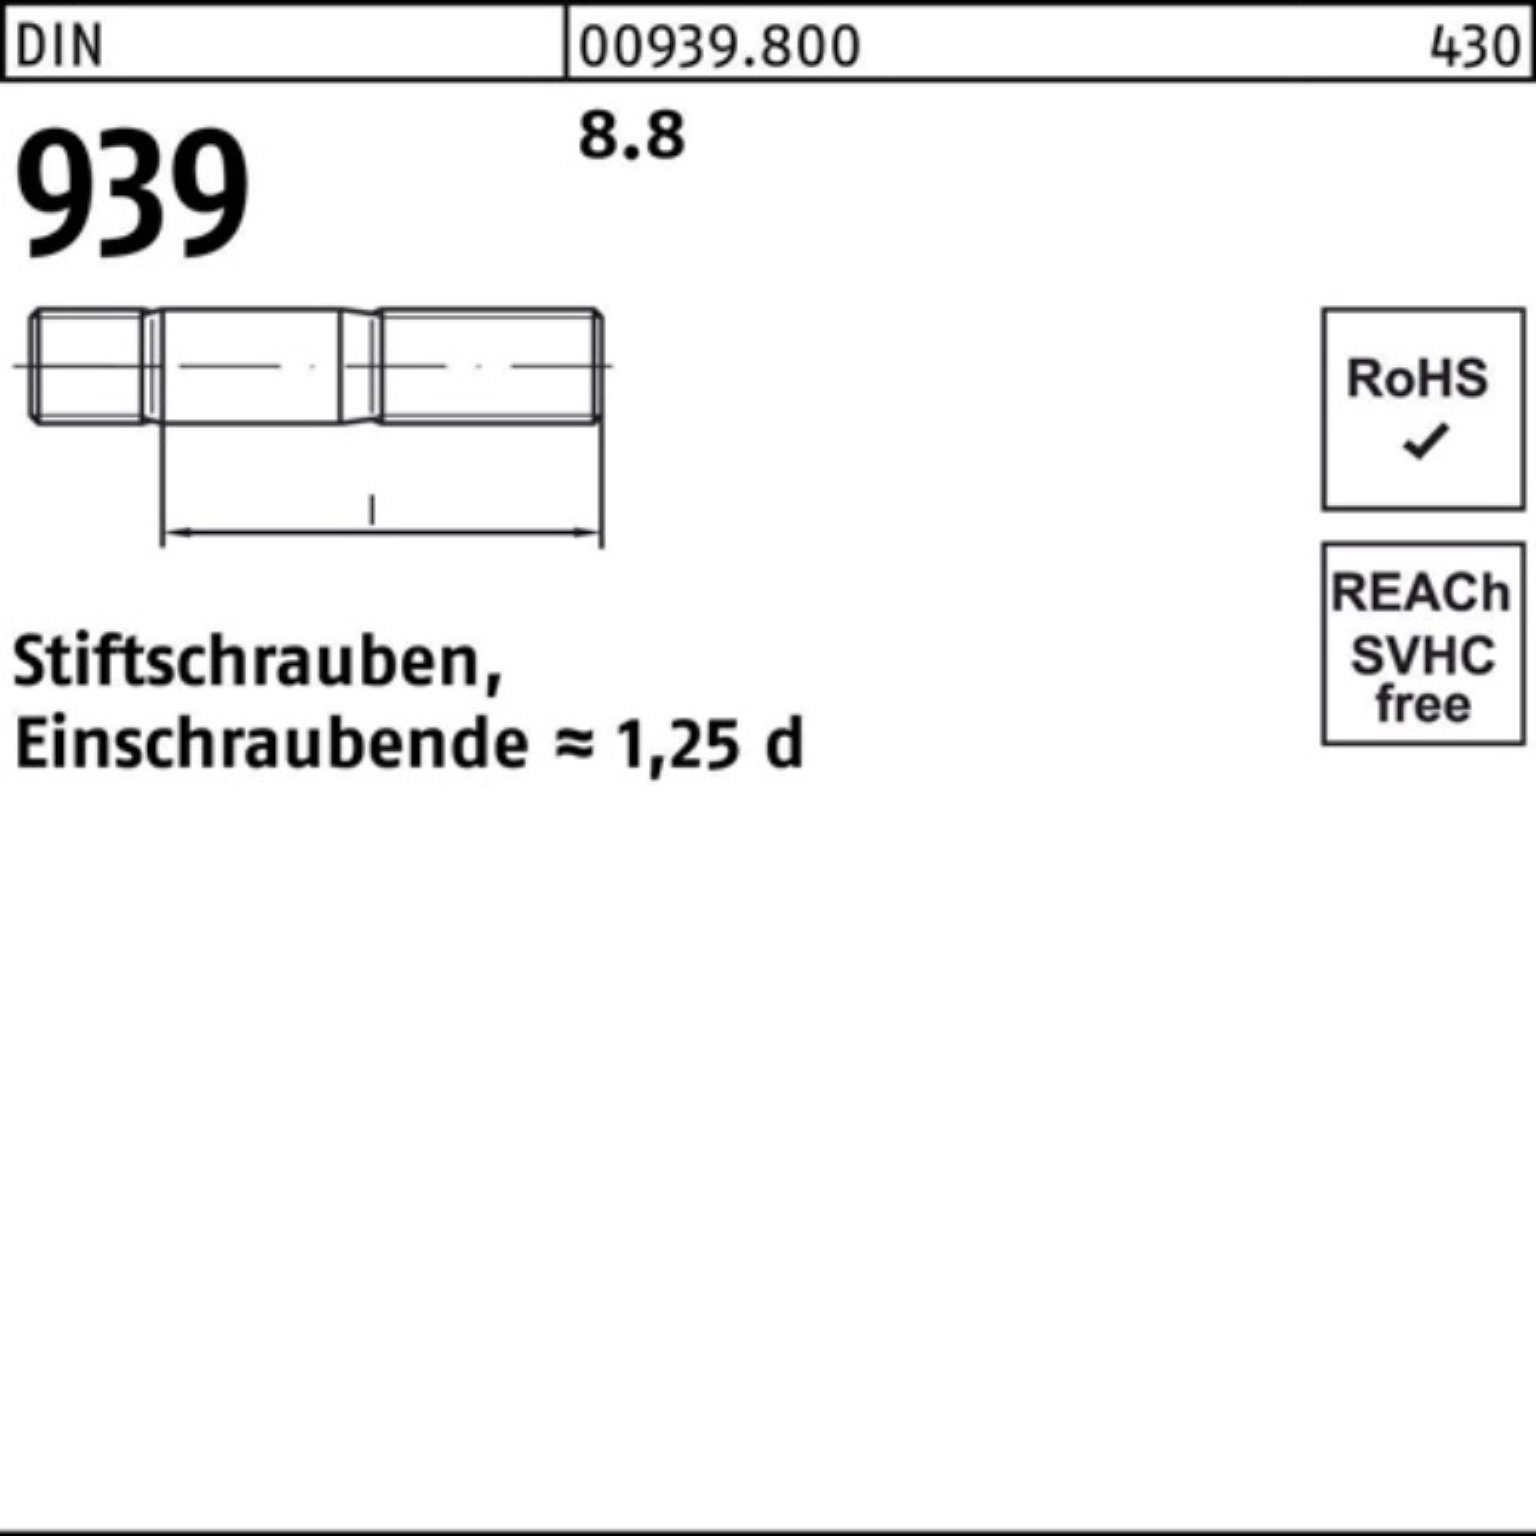 75 DIN S Reyher Einschraubende=1,25d 50 Stiftschraube 100er Stiftschraube 8.8 M10x 939 Pack